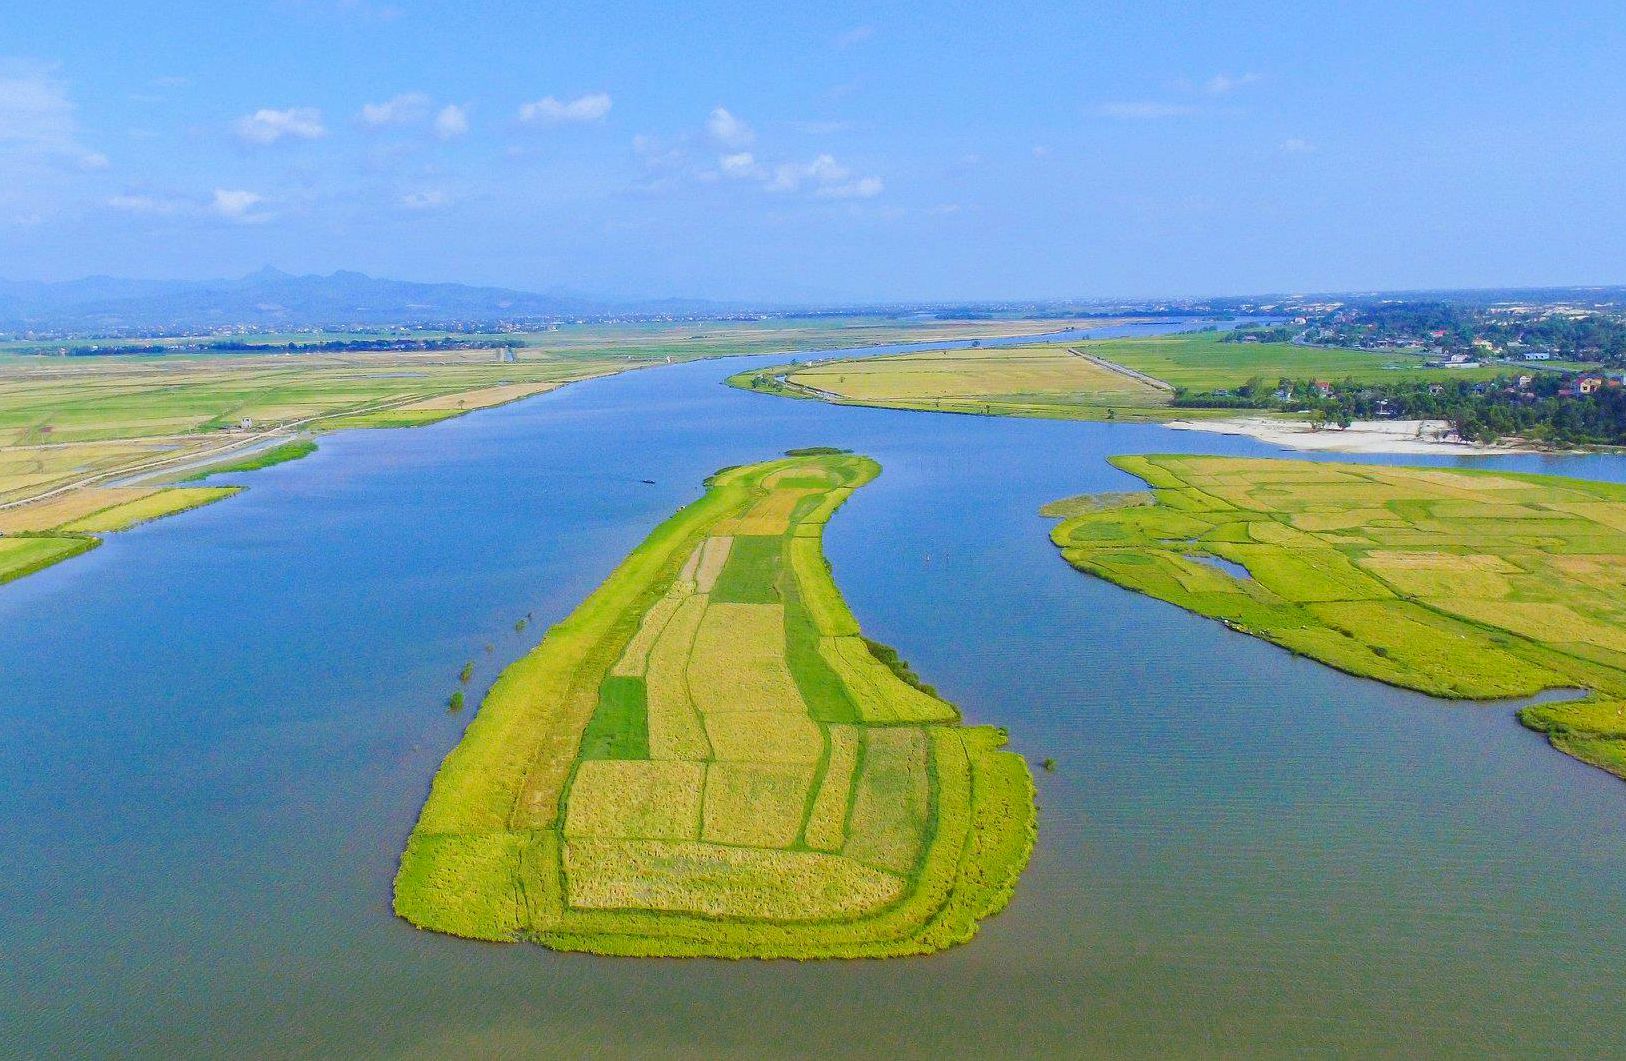 Dòng sông Kiến Giang là trái tim của kiến trúc cổ xưa, nó có vai trò quan trọng đối với lịch sử Việt Nam. Cùng nhìn ngắm bức ảnh của dòng sông Kiến Giang và khám phá sự đa dạng của kiến trúc cổ xưa trong nhiều thời kỳ khác nhau.